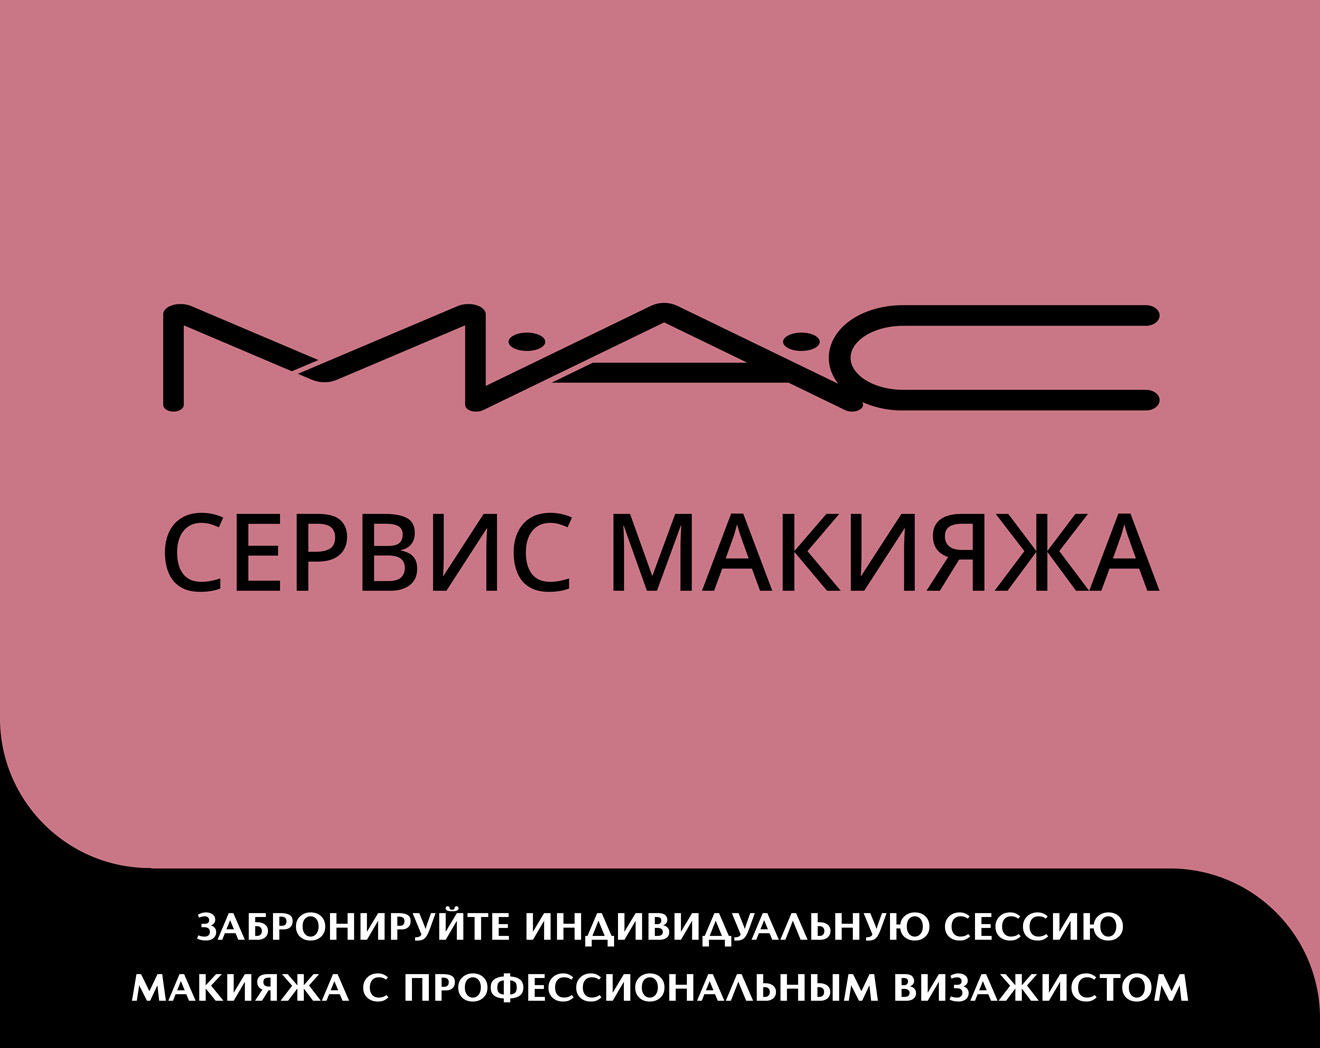 Сервис макияжа от M.A.C.!